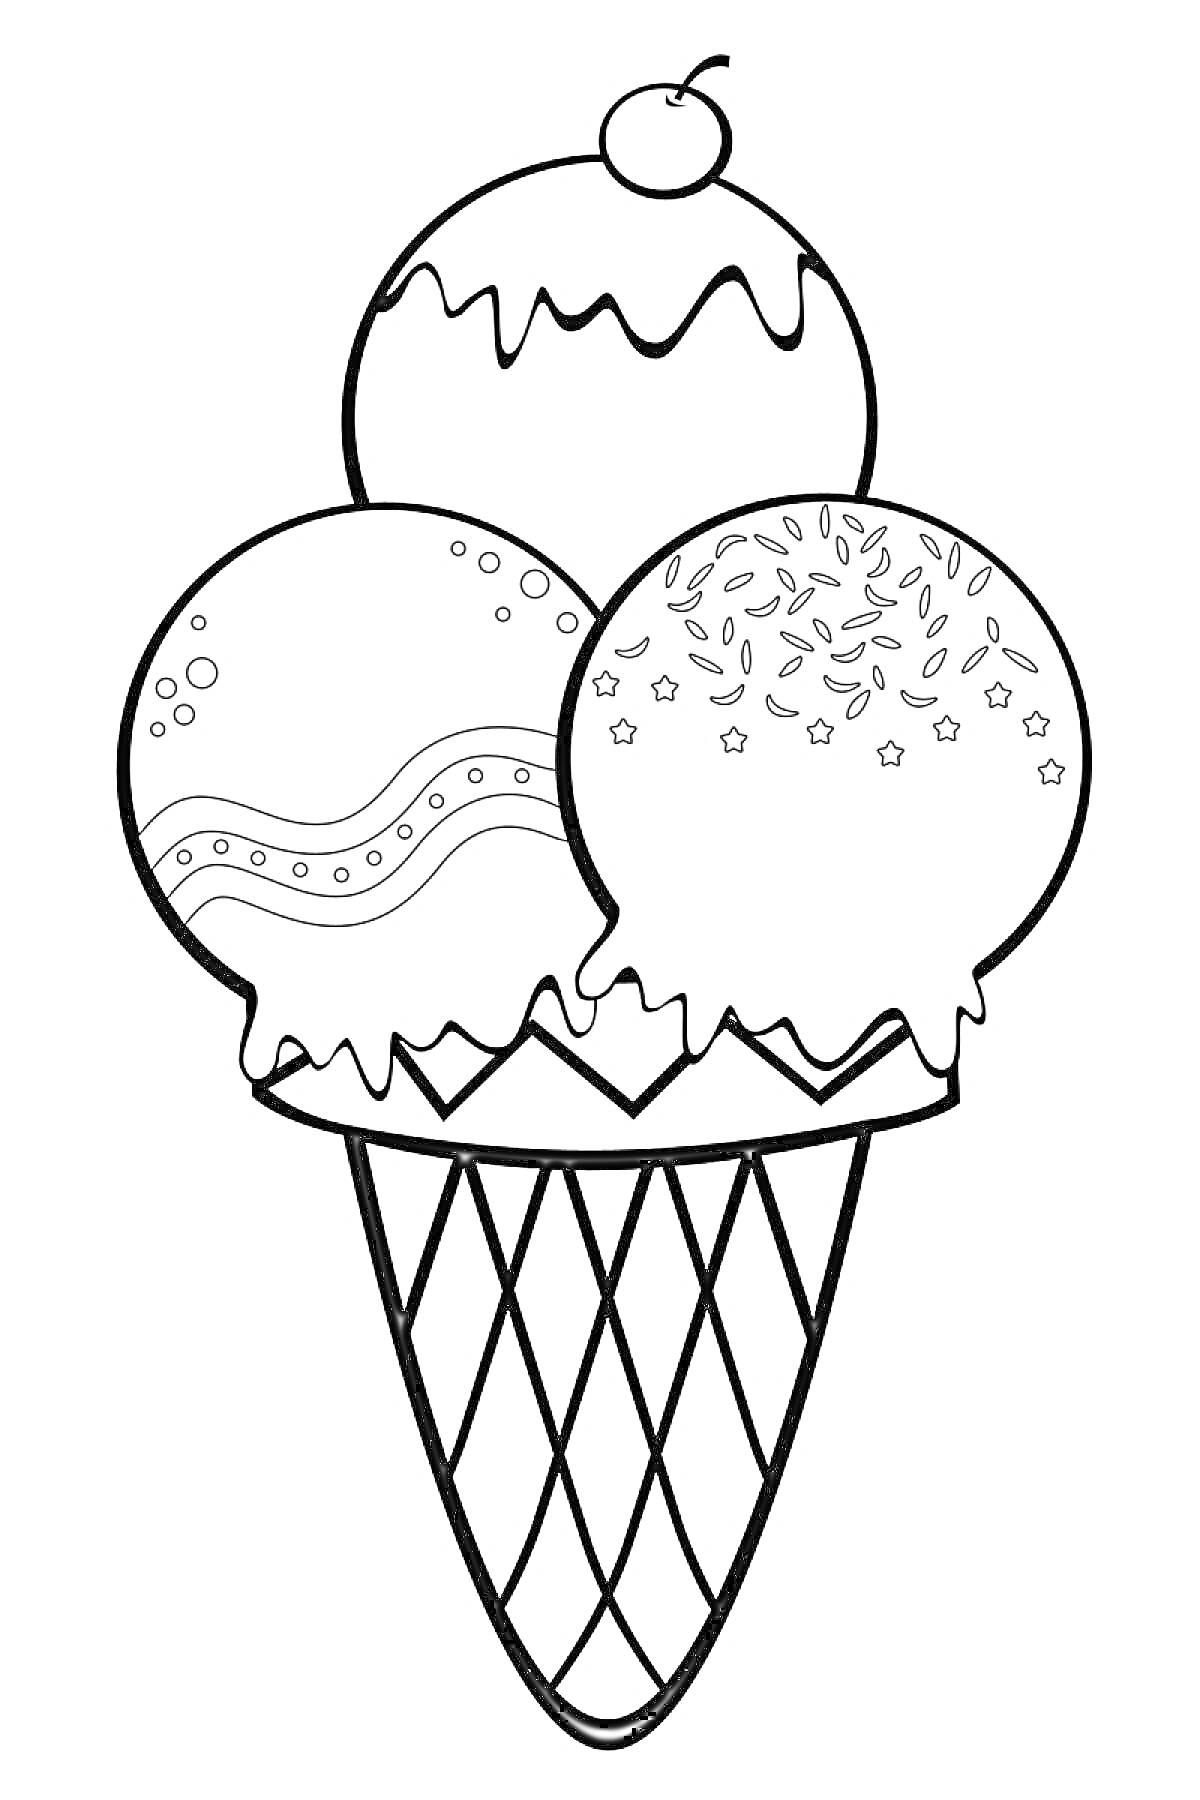 Мороженое в вафельном рожке с тремя шариками: украшенный глазурью шарик с вишенкой, шарик с волнистым узором и шарик со звездочками и посыпкой